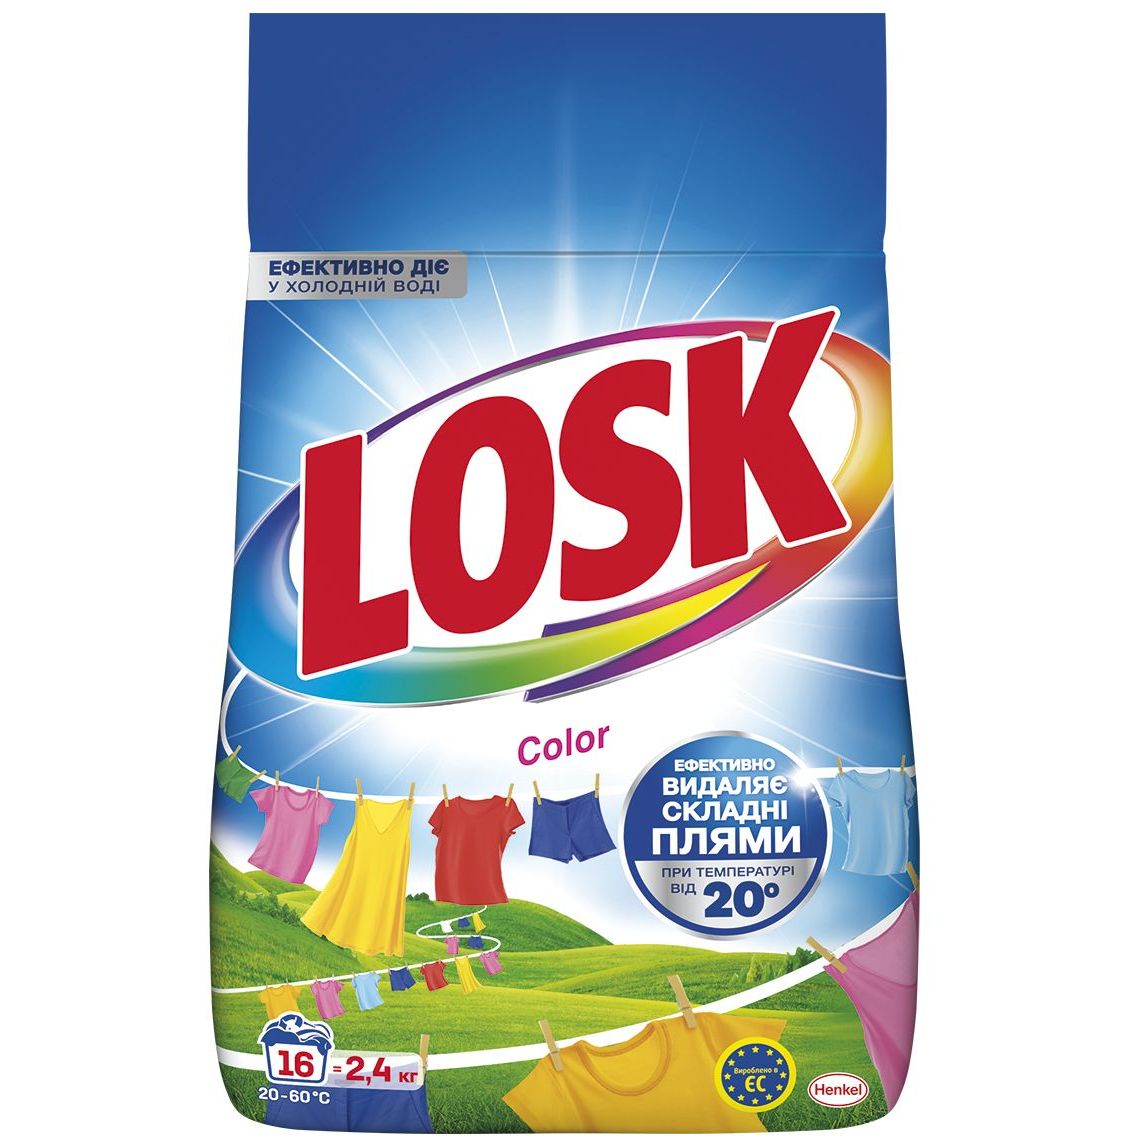 Порошок для стирки Losk Color для цветных вещей 2.4 кг - фото 1